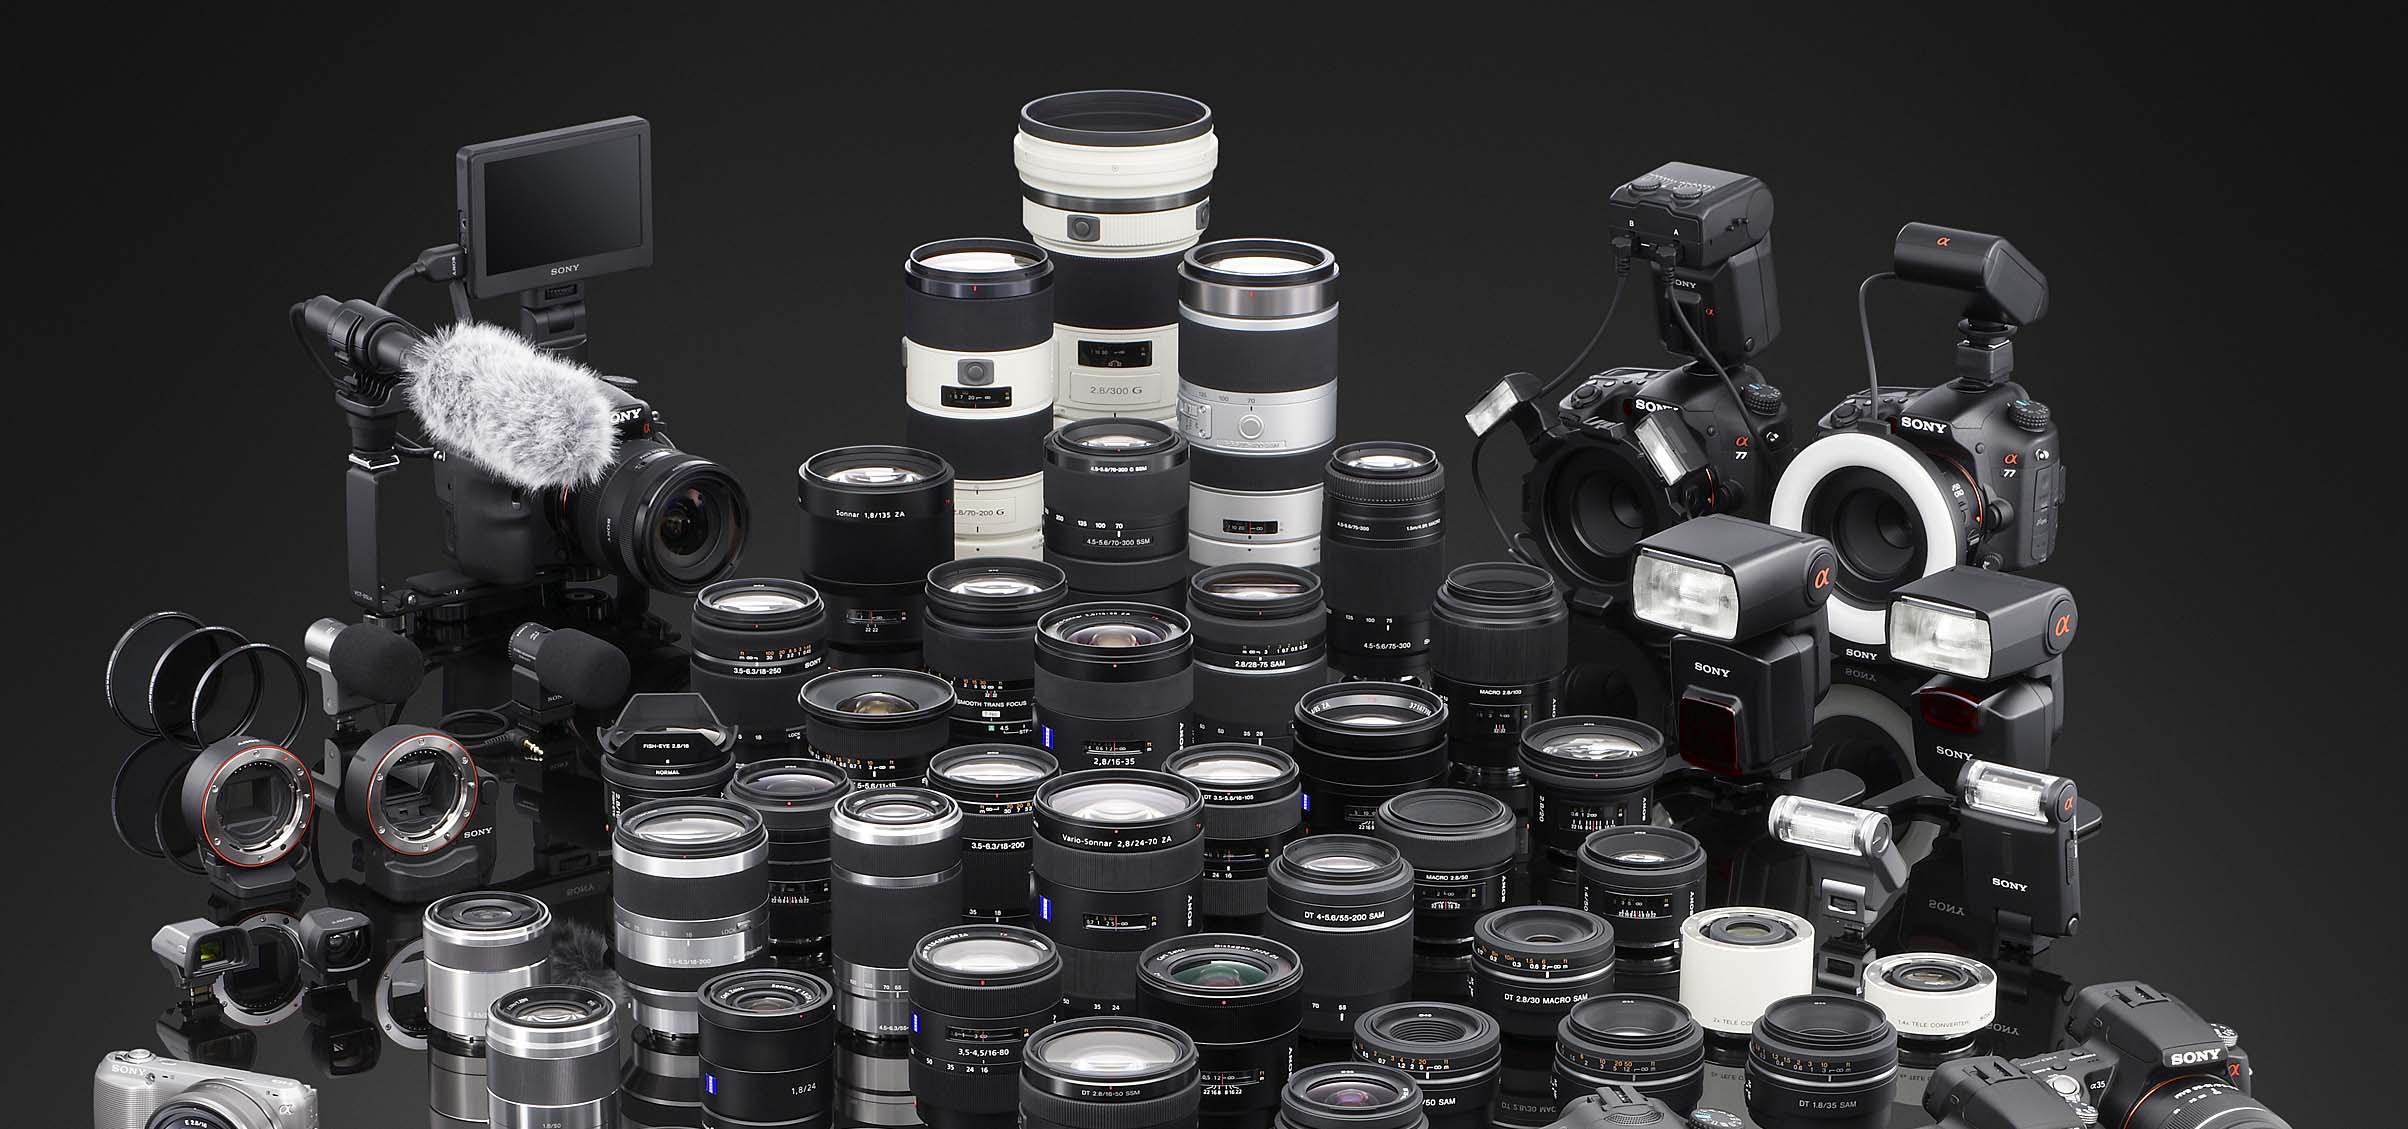 Chi tiết hệ thống ống kính của Sony: Hành trình 11 năm